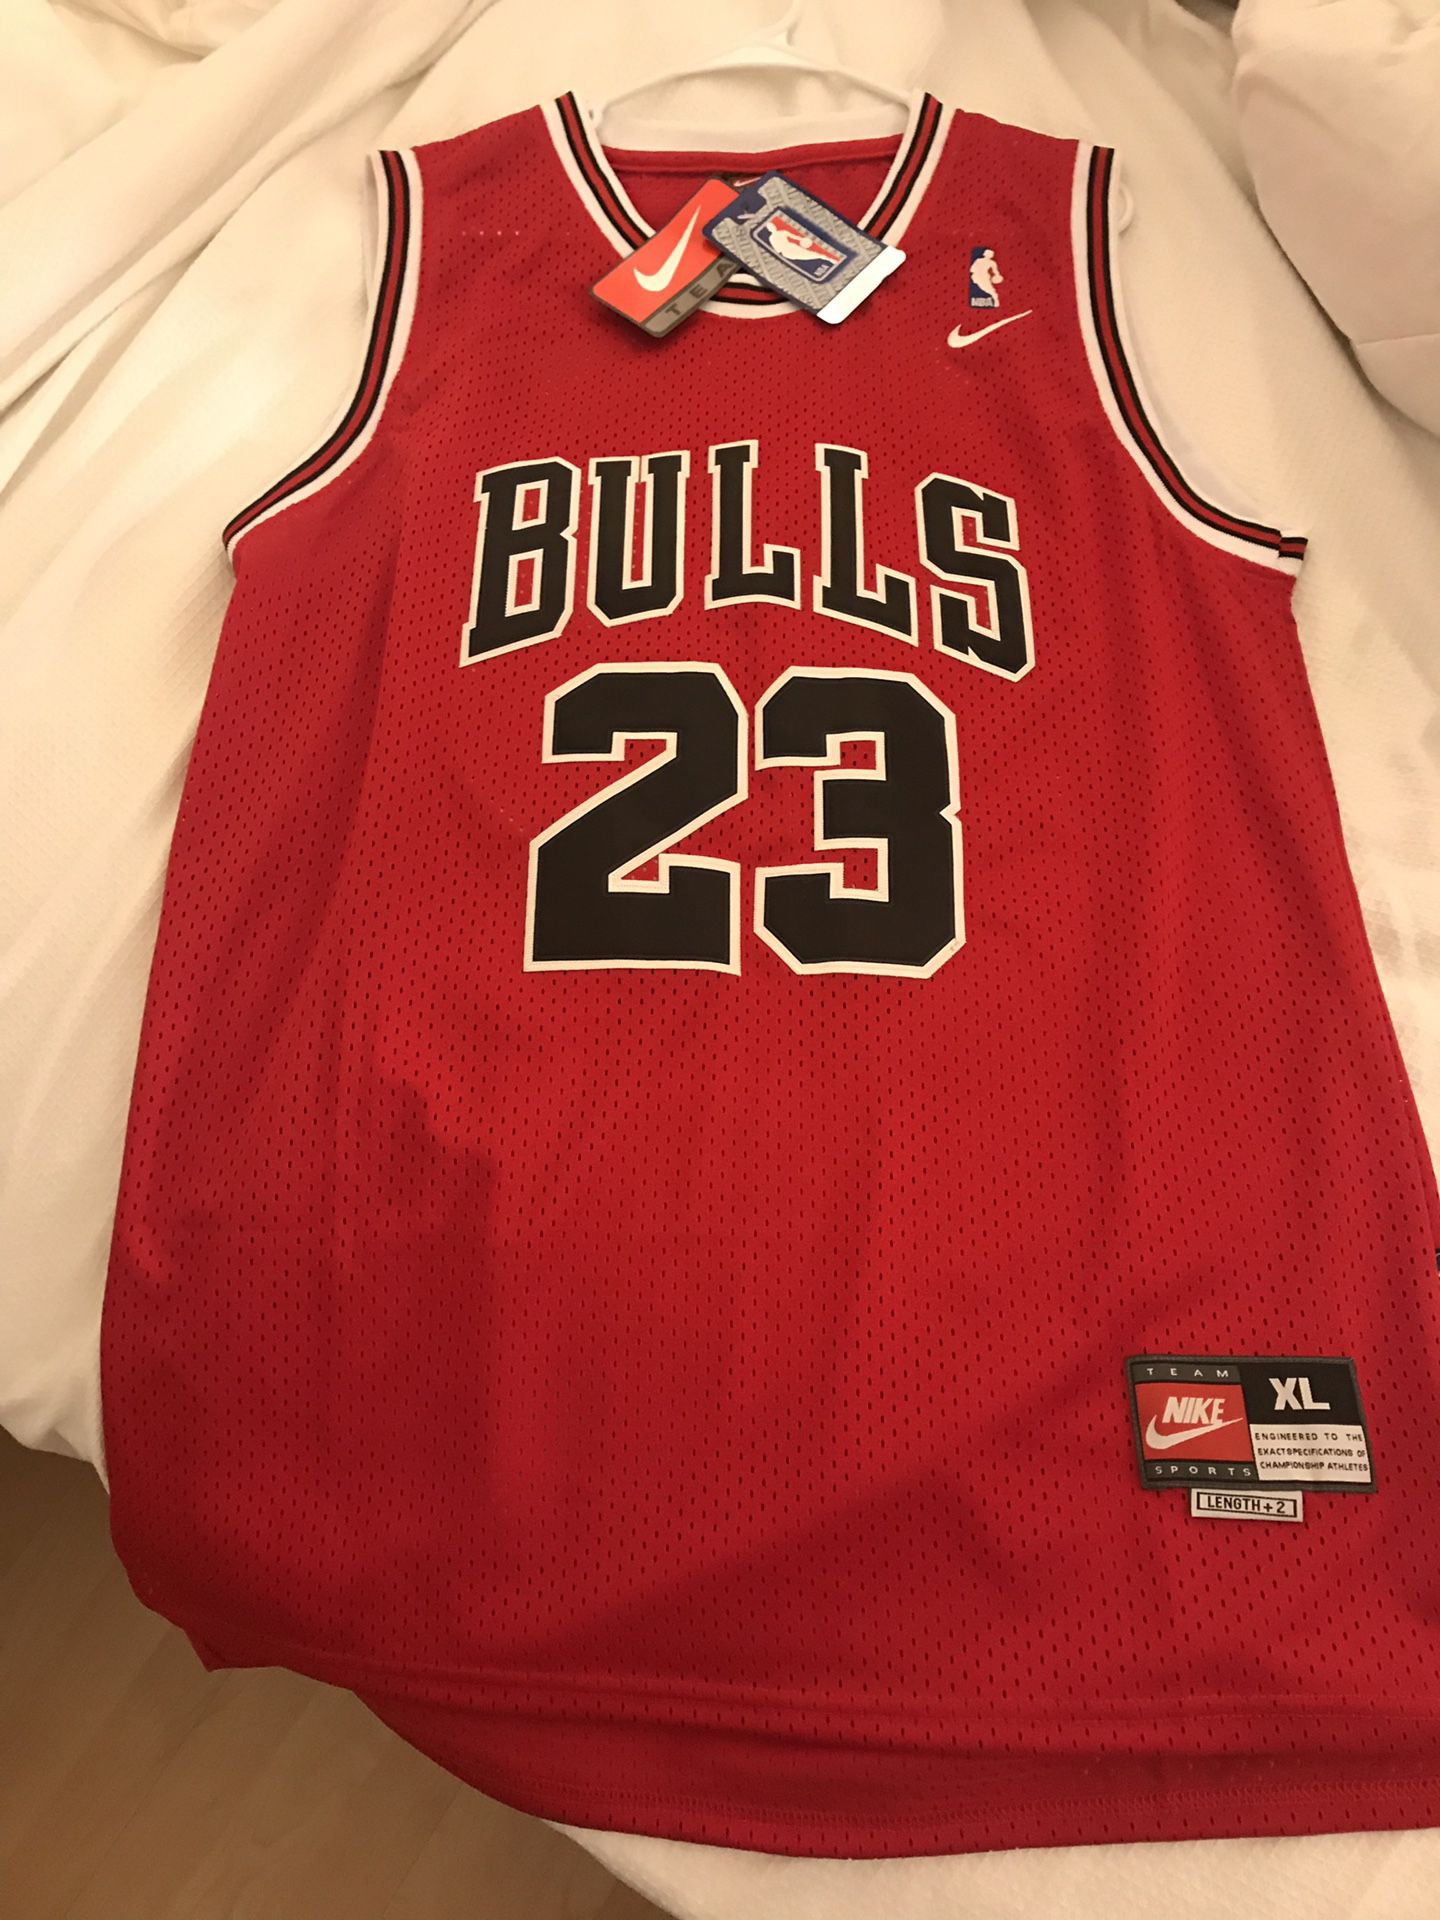 Jordan jersey bulls 23